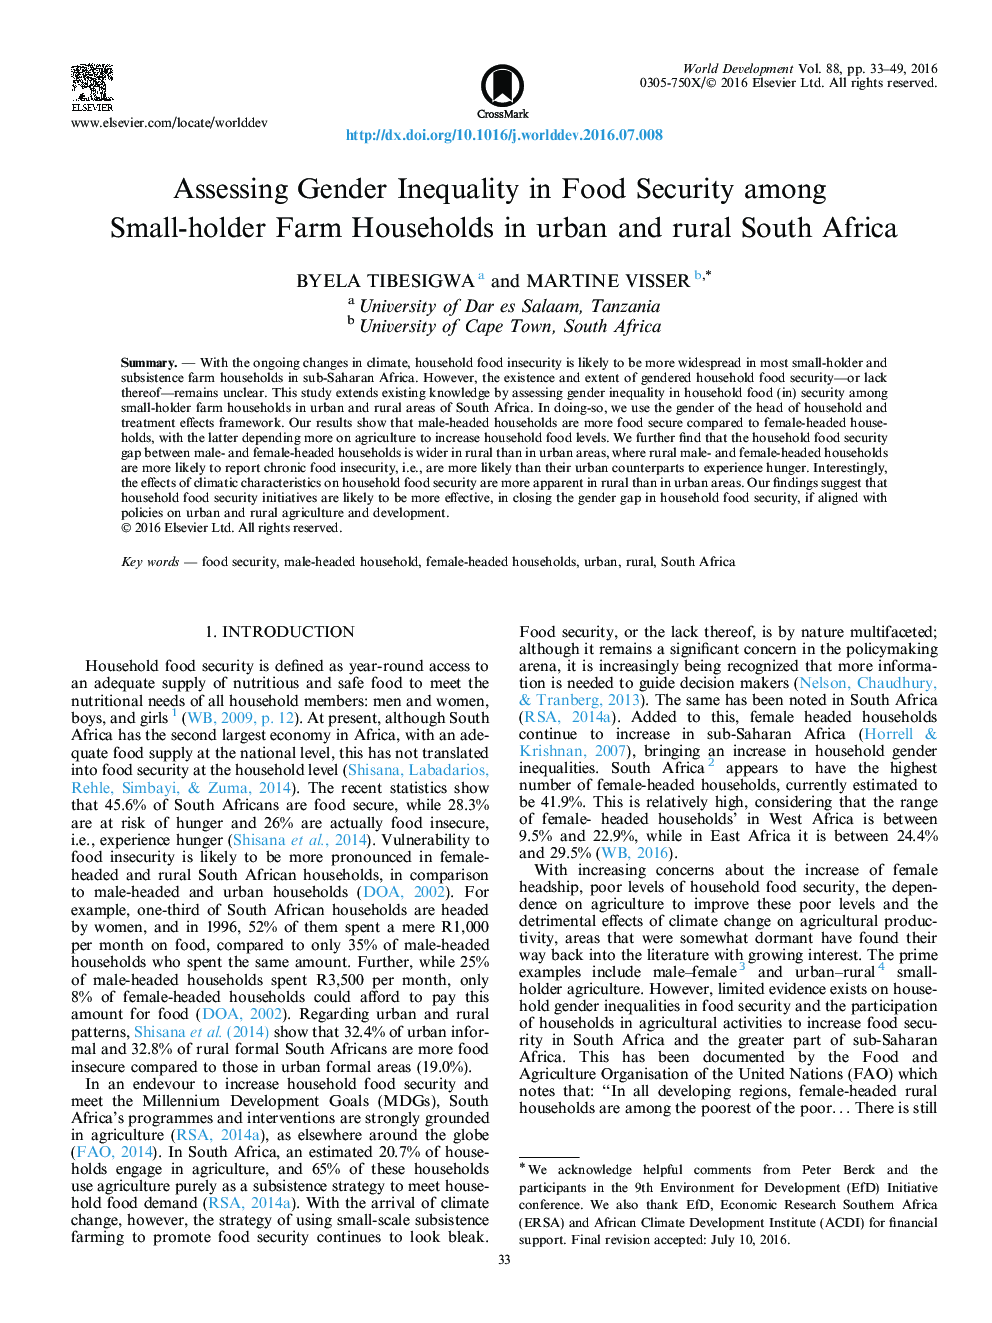 ارزیابی نابرابری در امنیت غذایی در میان خانواده های دارنده مزرعه کوچک در مناطق شهری و روستایی آفریقای جنوبی